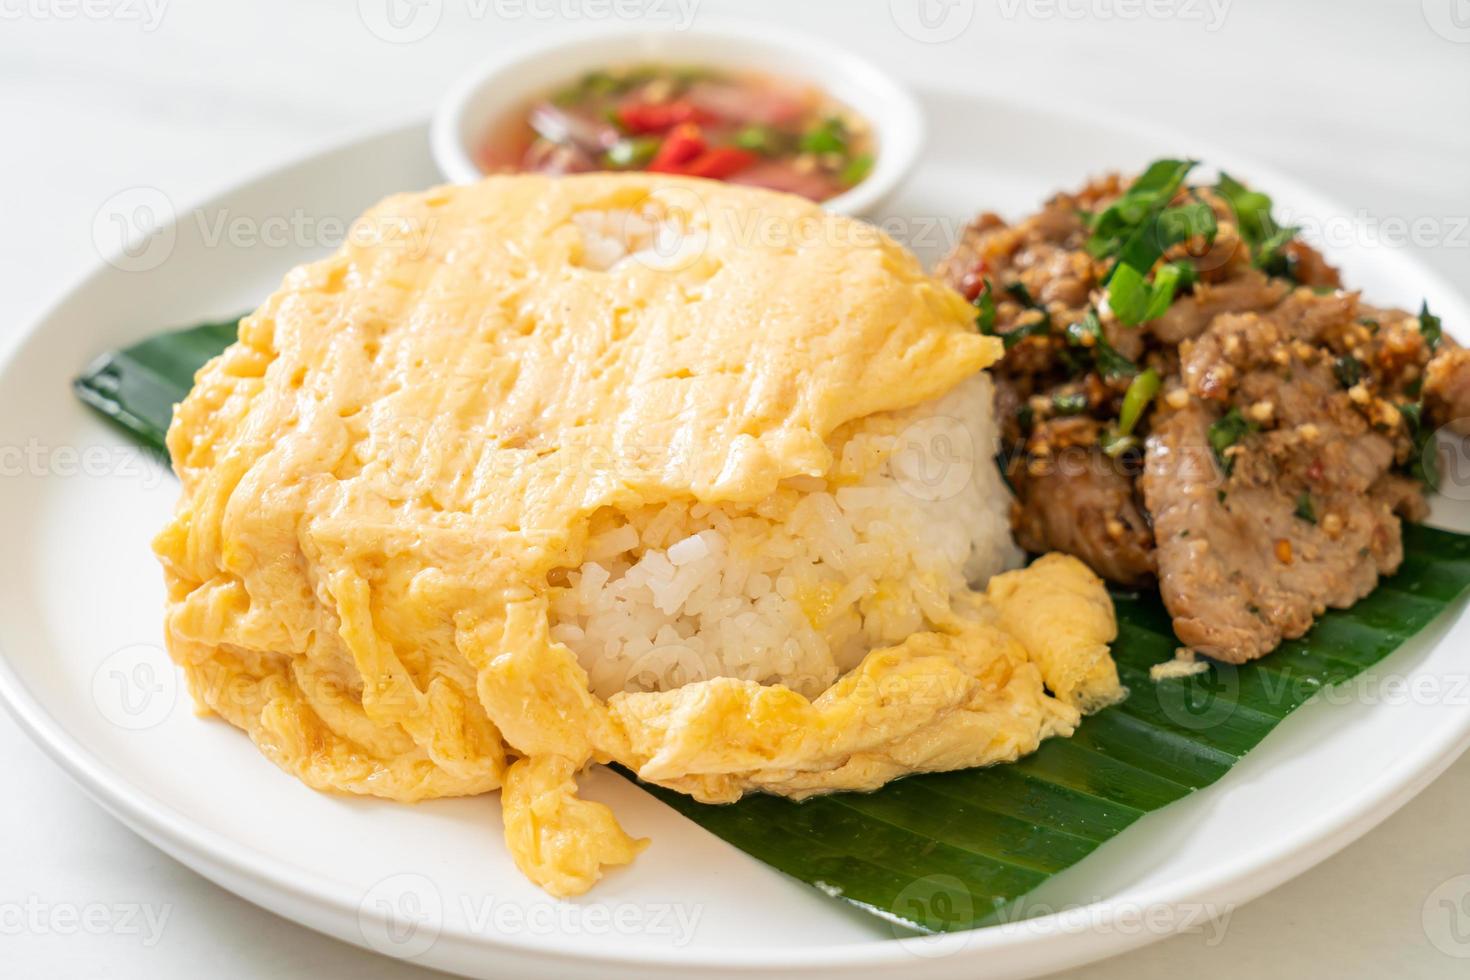 Ei auf belegtem Reis mit gegrilltem Schweinefleisch und scharfer Sauce - asiatische Küche as foto